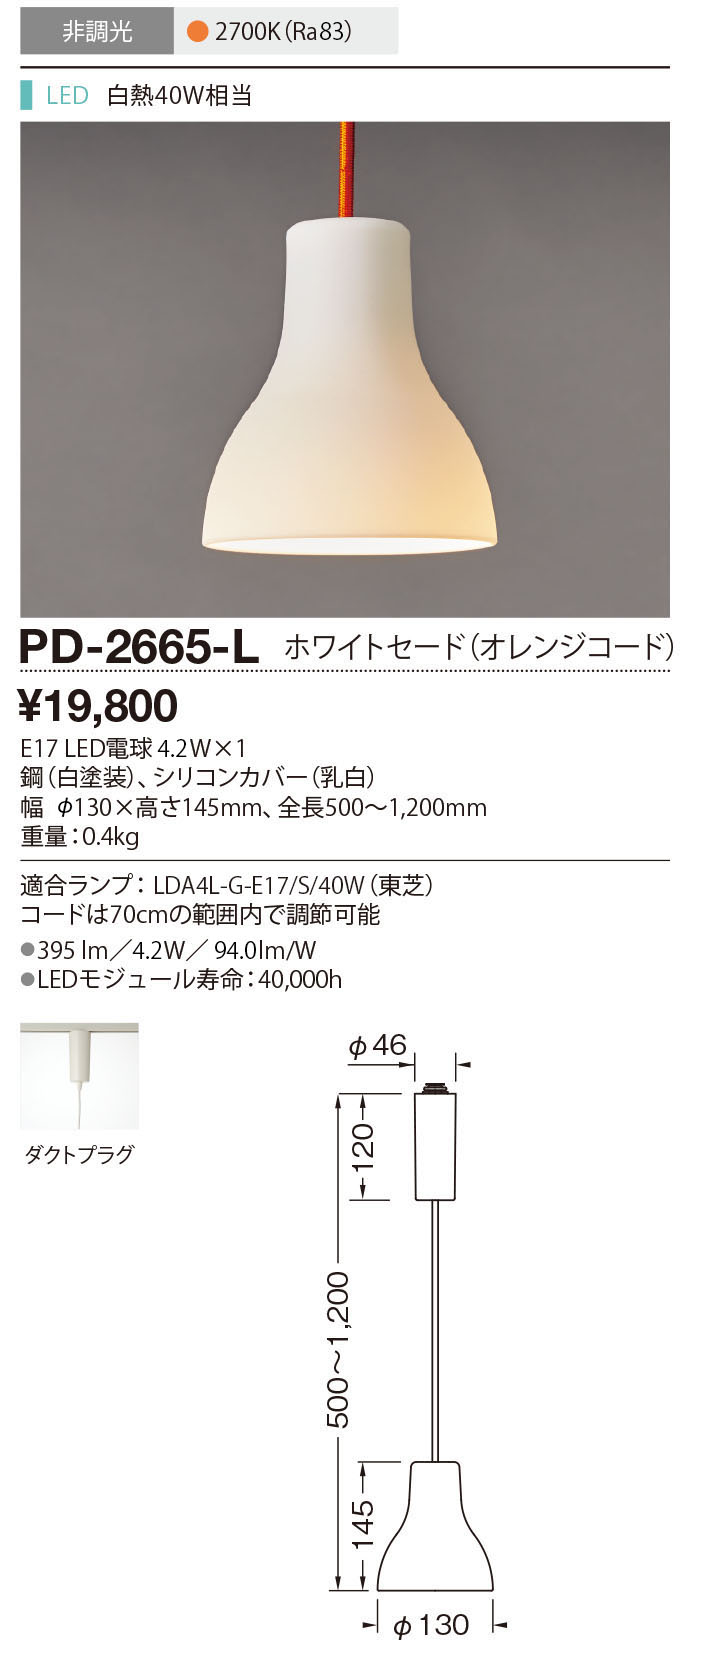 PD-2665-L(山田照明) 商品詳細 ～ 照明器具・換気扇他、電設資材販売の